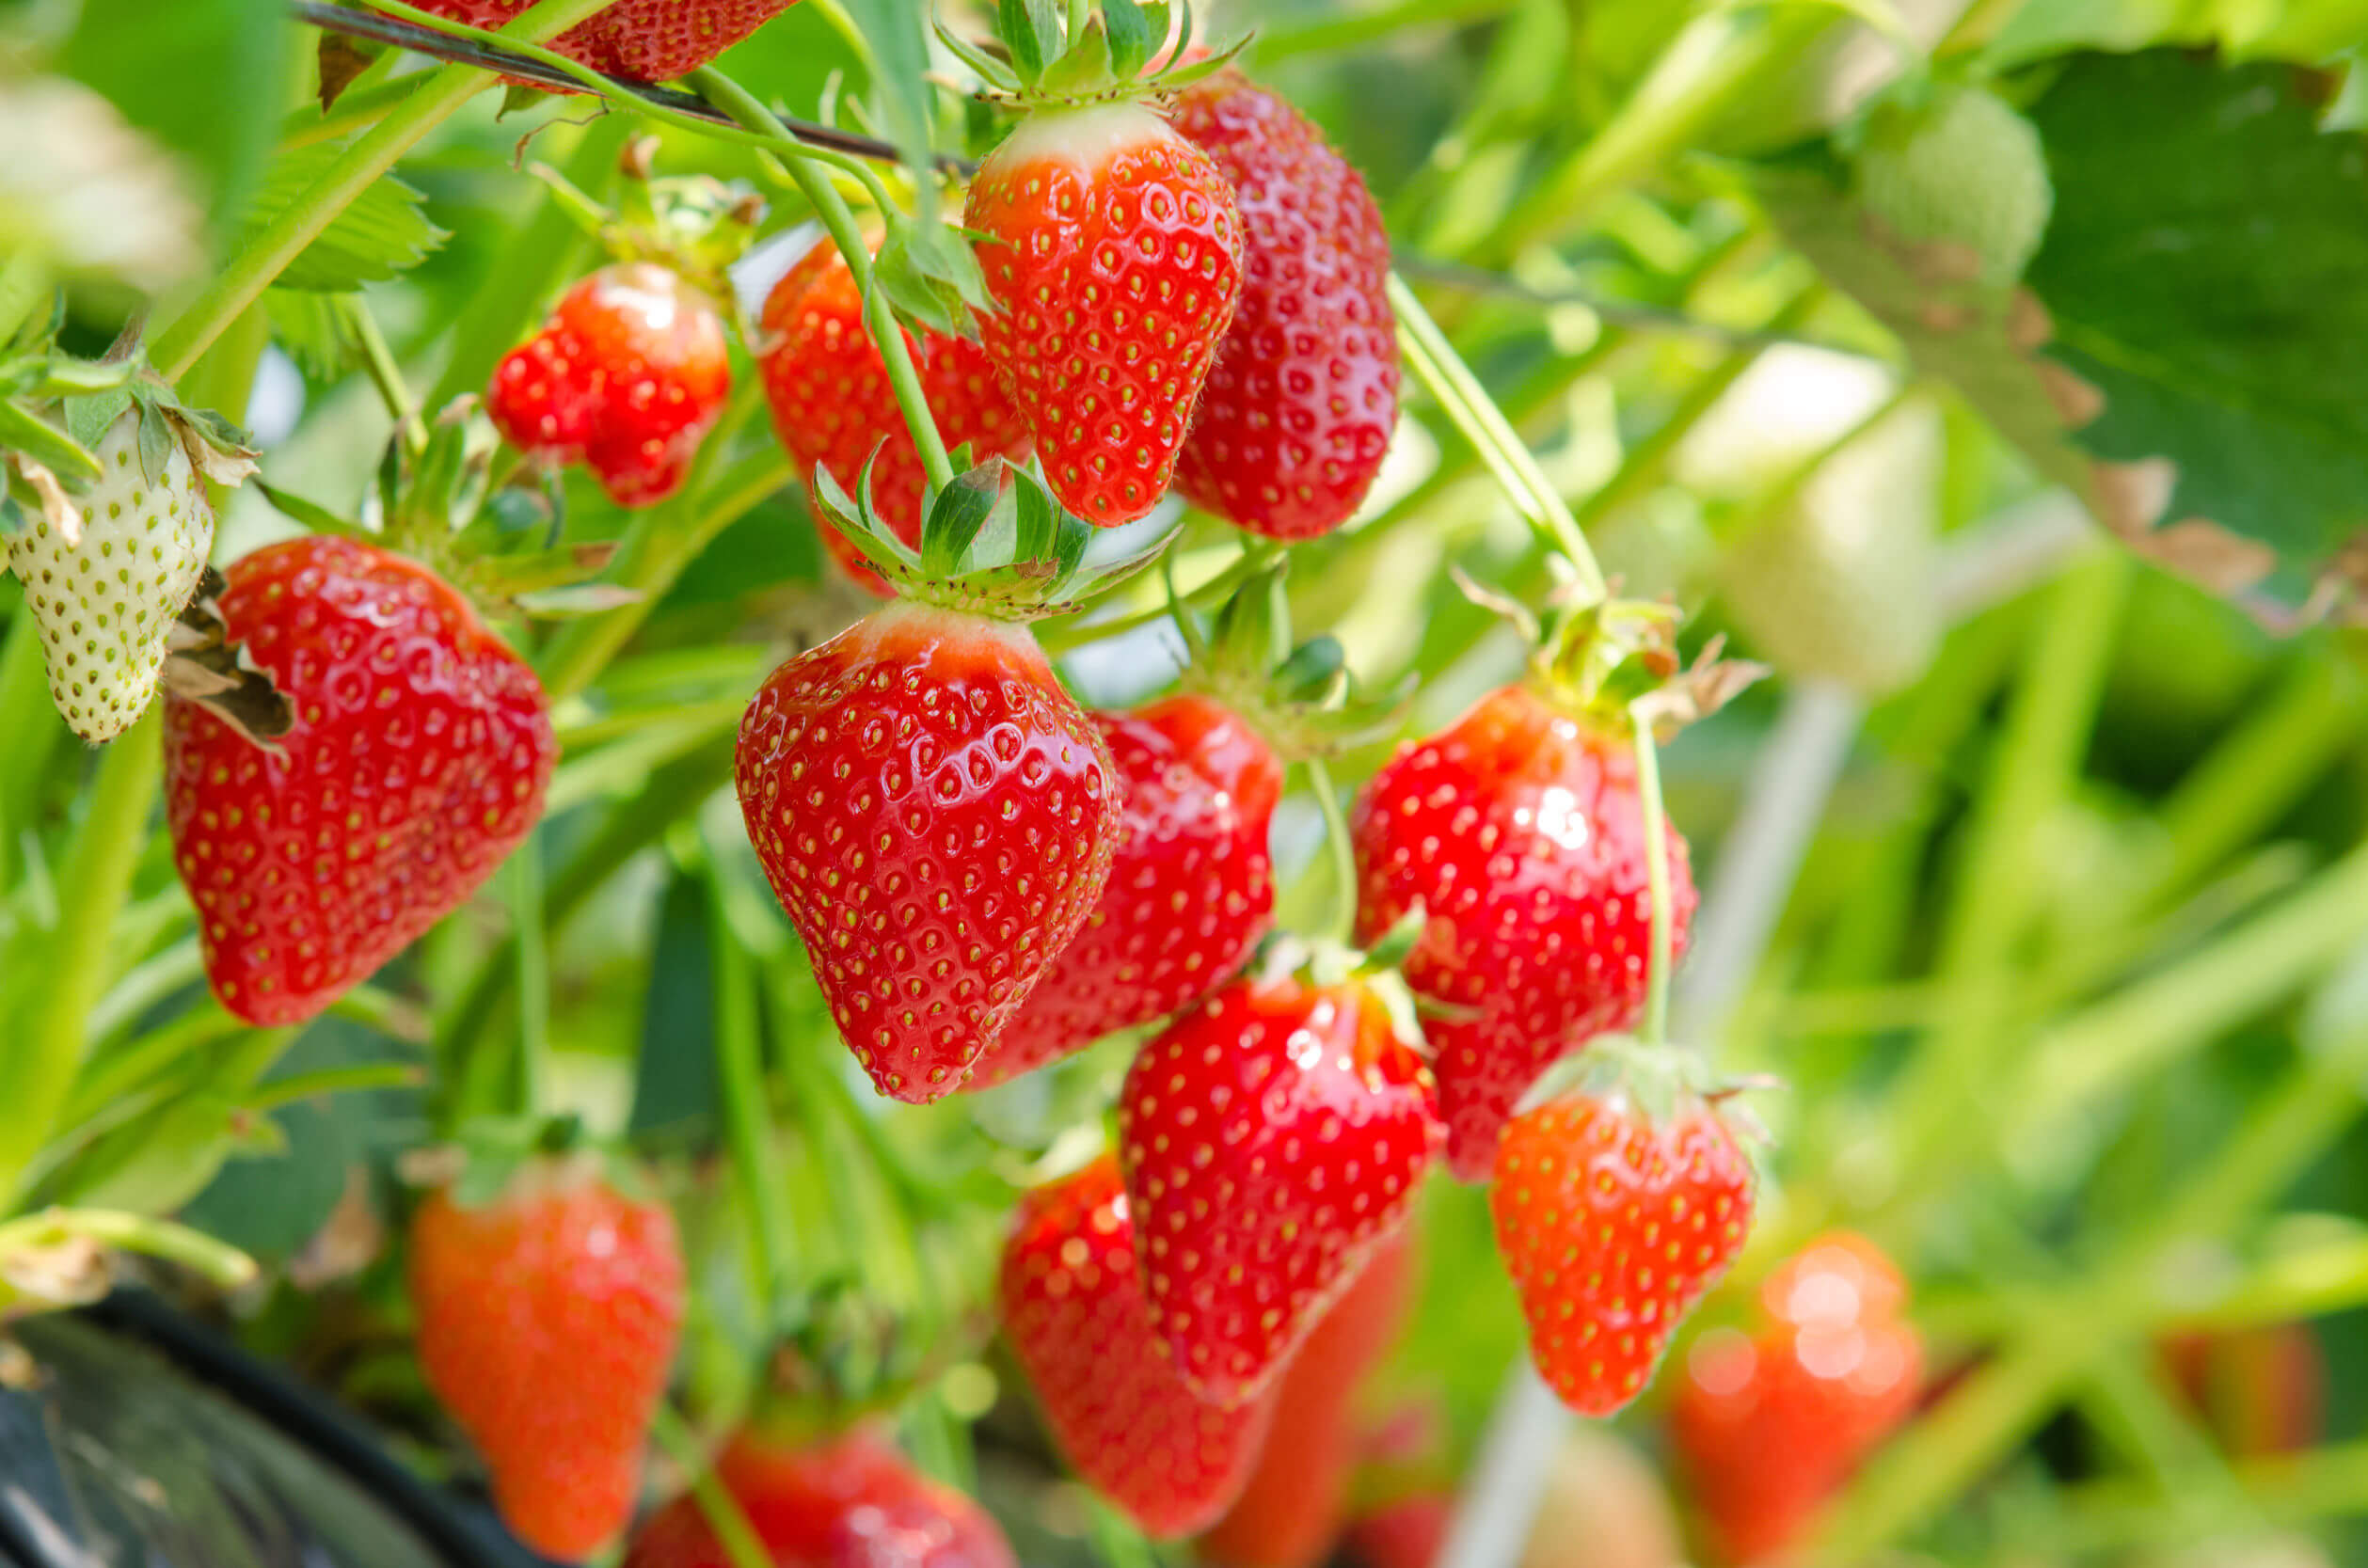 El consumo regular de fresas traen excelentes beneficios.